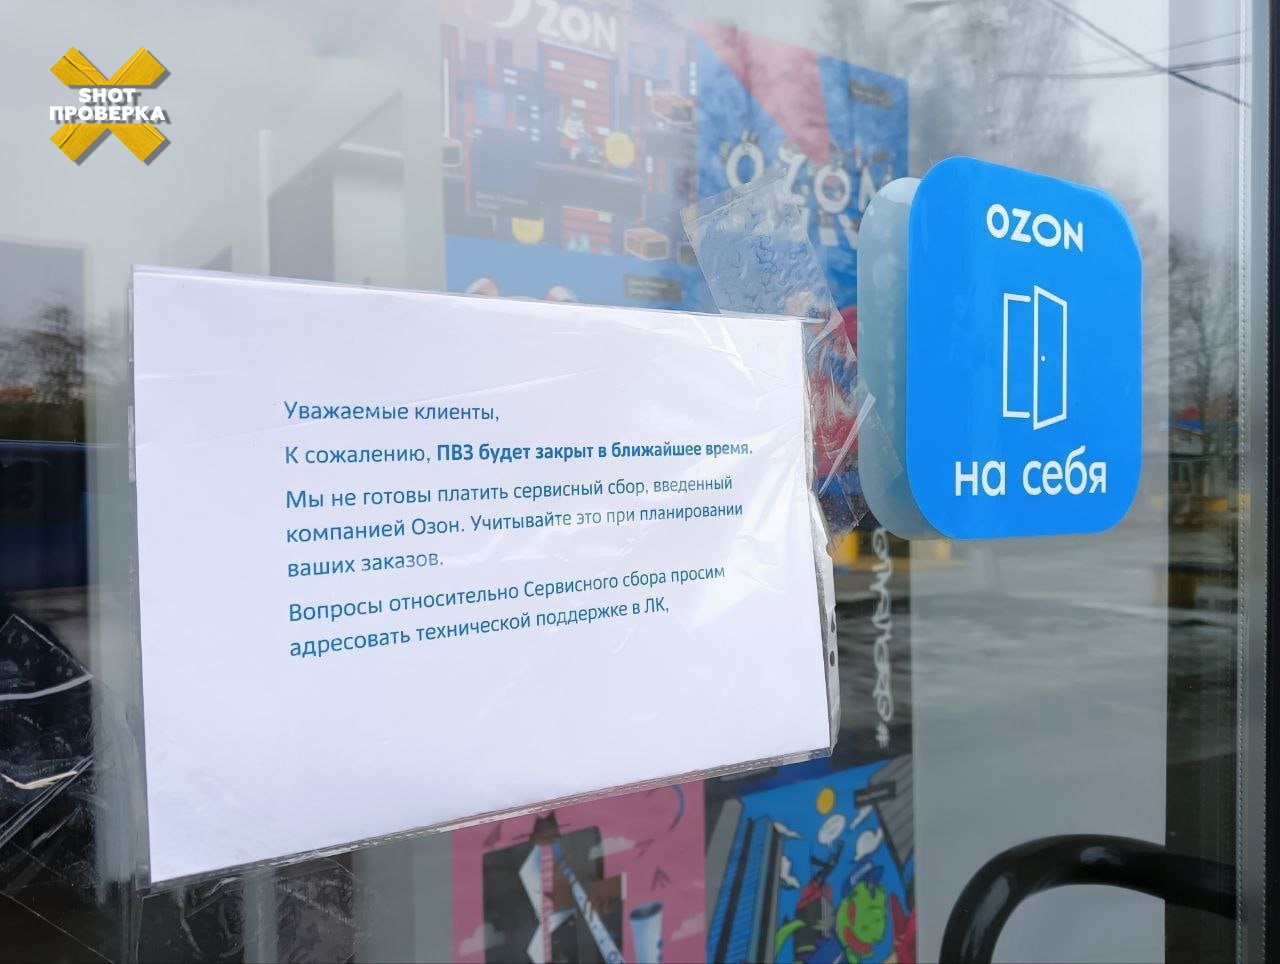 Несколько пунктов выдачи OZON по всей России закрылись в качестве забастовки